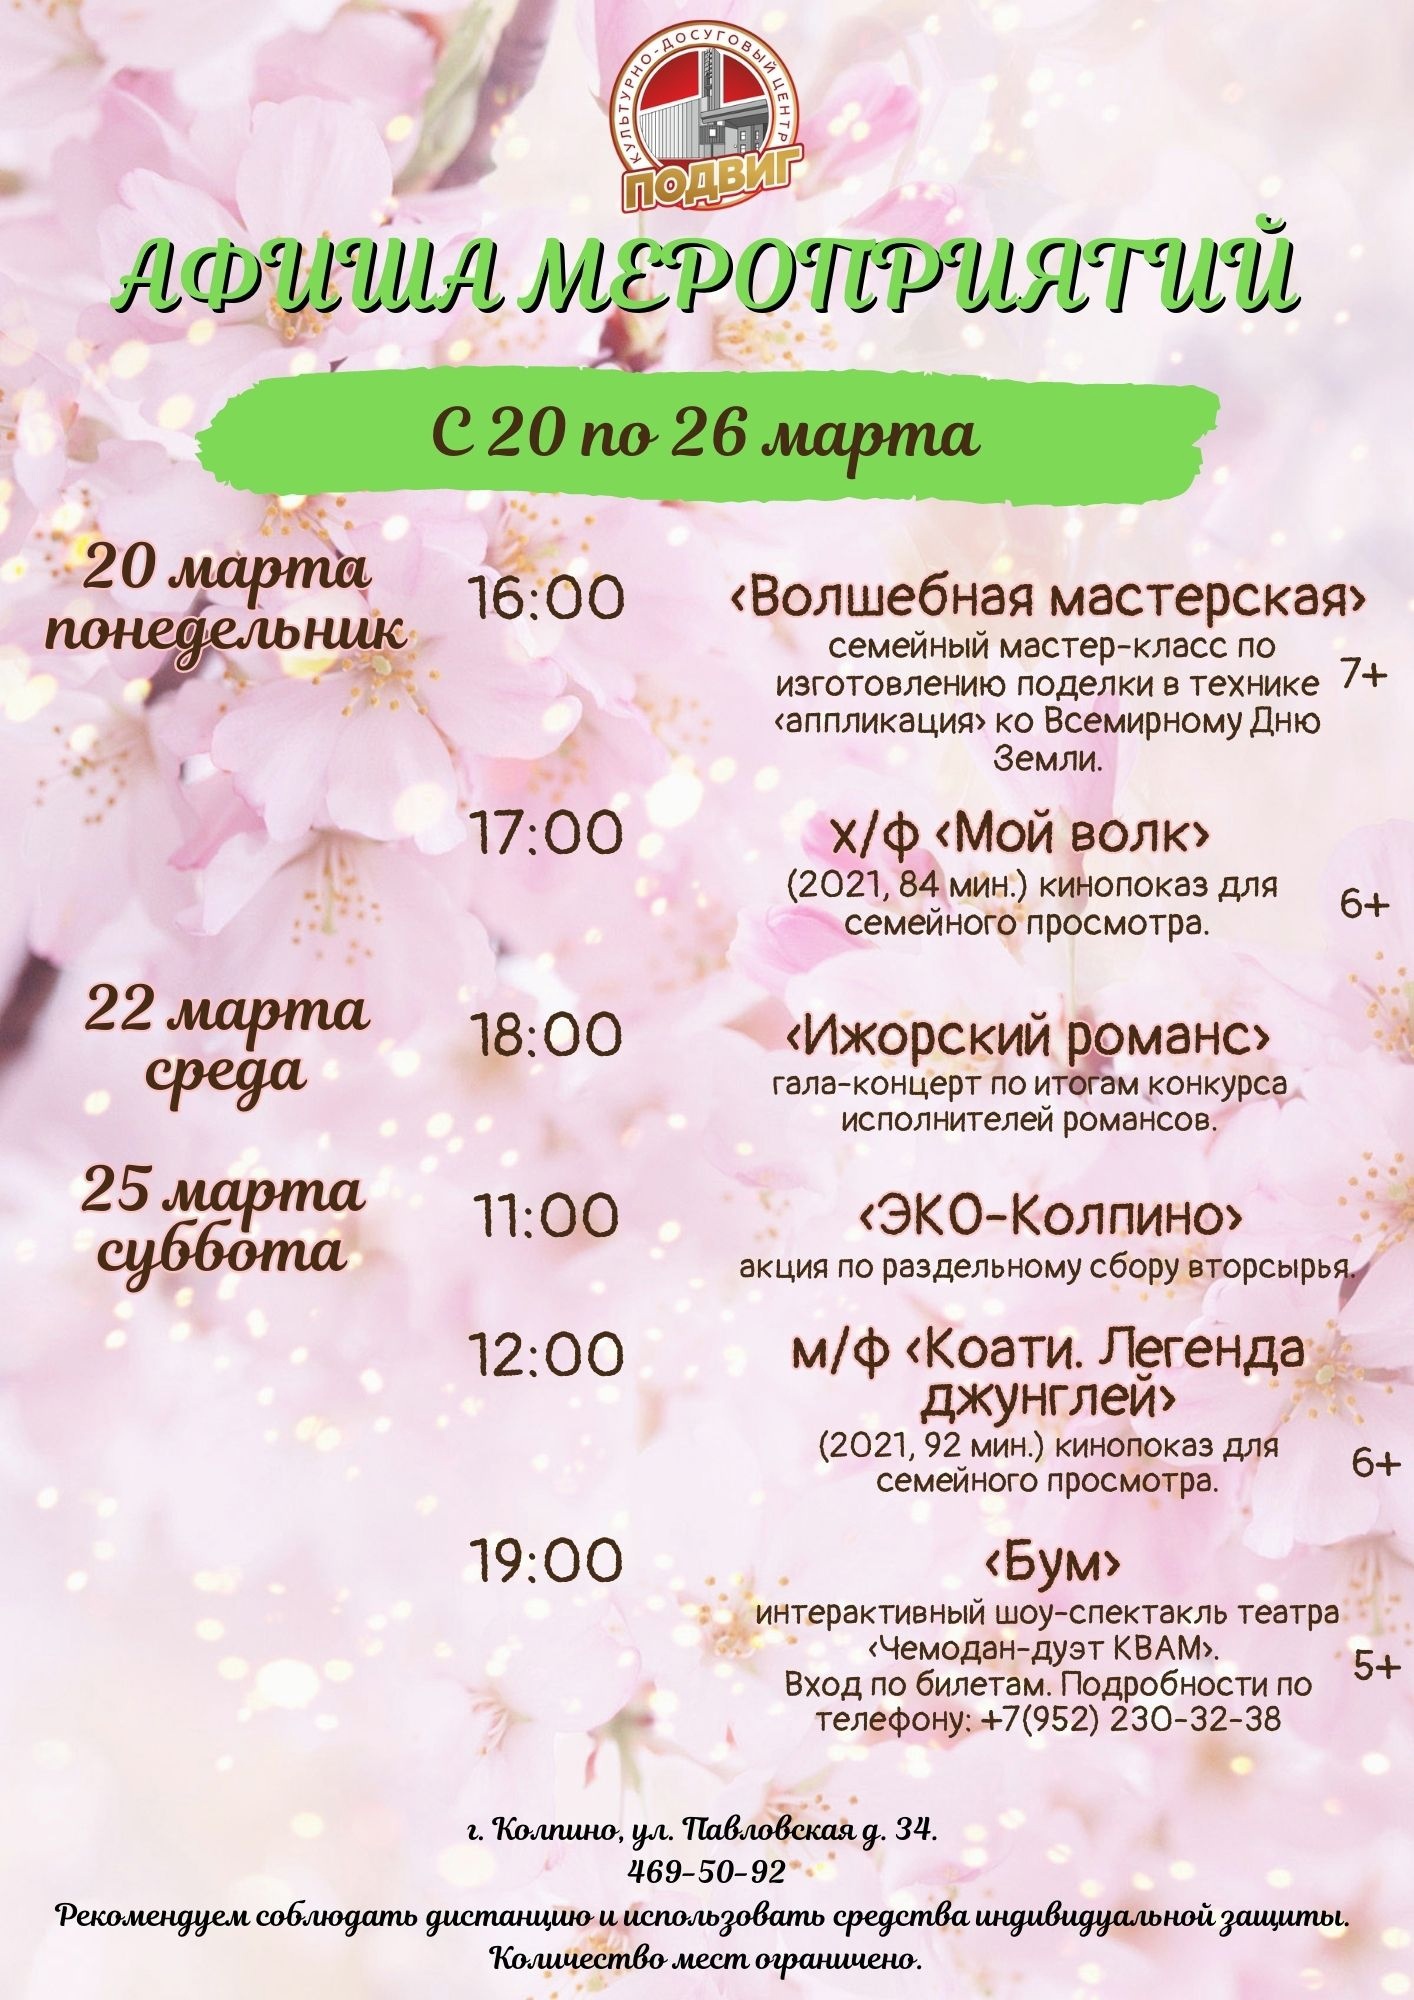 Афиша мероприятий культурно-досугового центра "Подвиг" с 20 по 26 марта